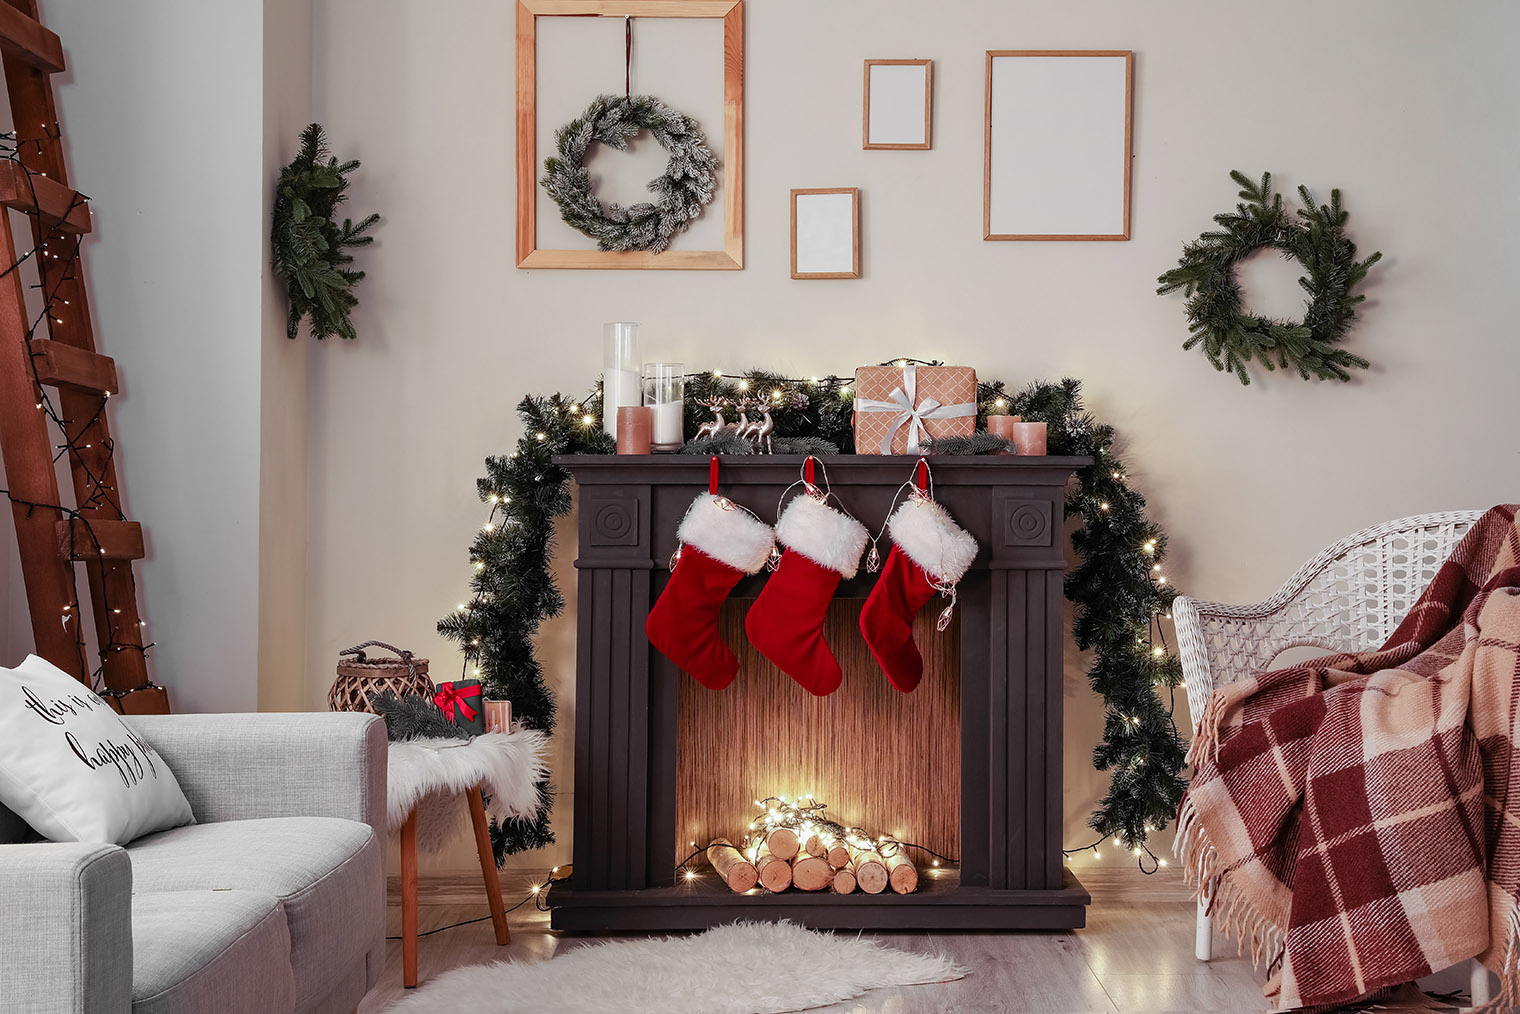 Электрокамины и фальшкамины декорируют как настоящие: гирляндами, ветками и новогодними носками для подарков. Фотография: Pixel-Shot / Shutterstock